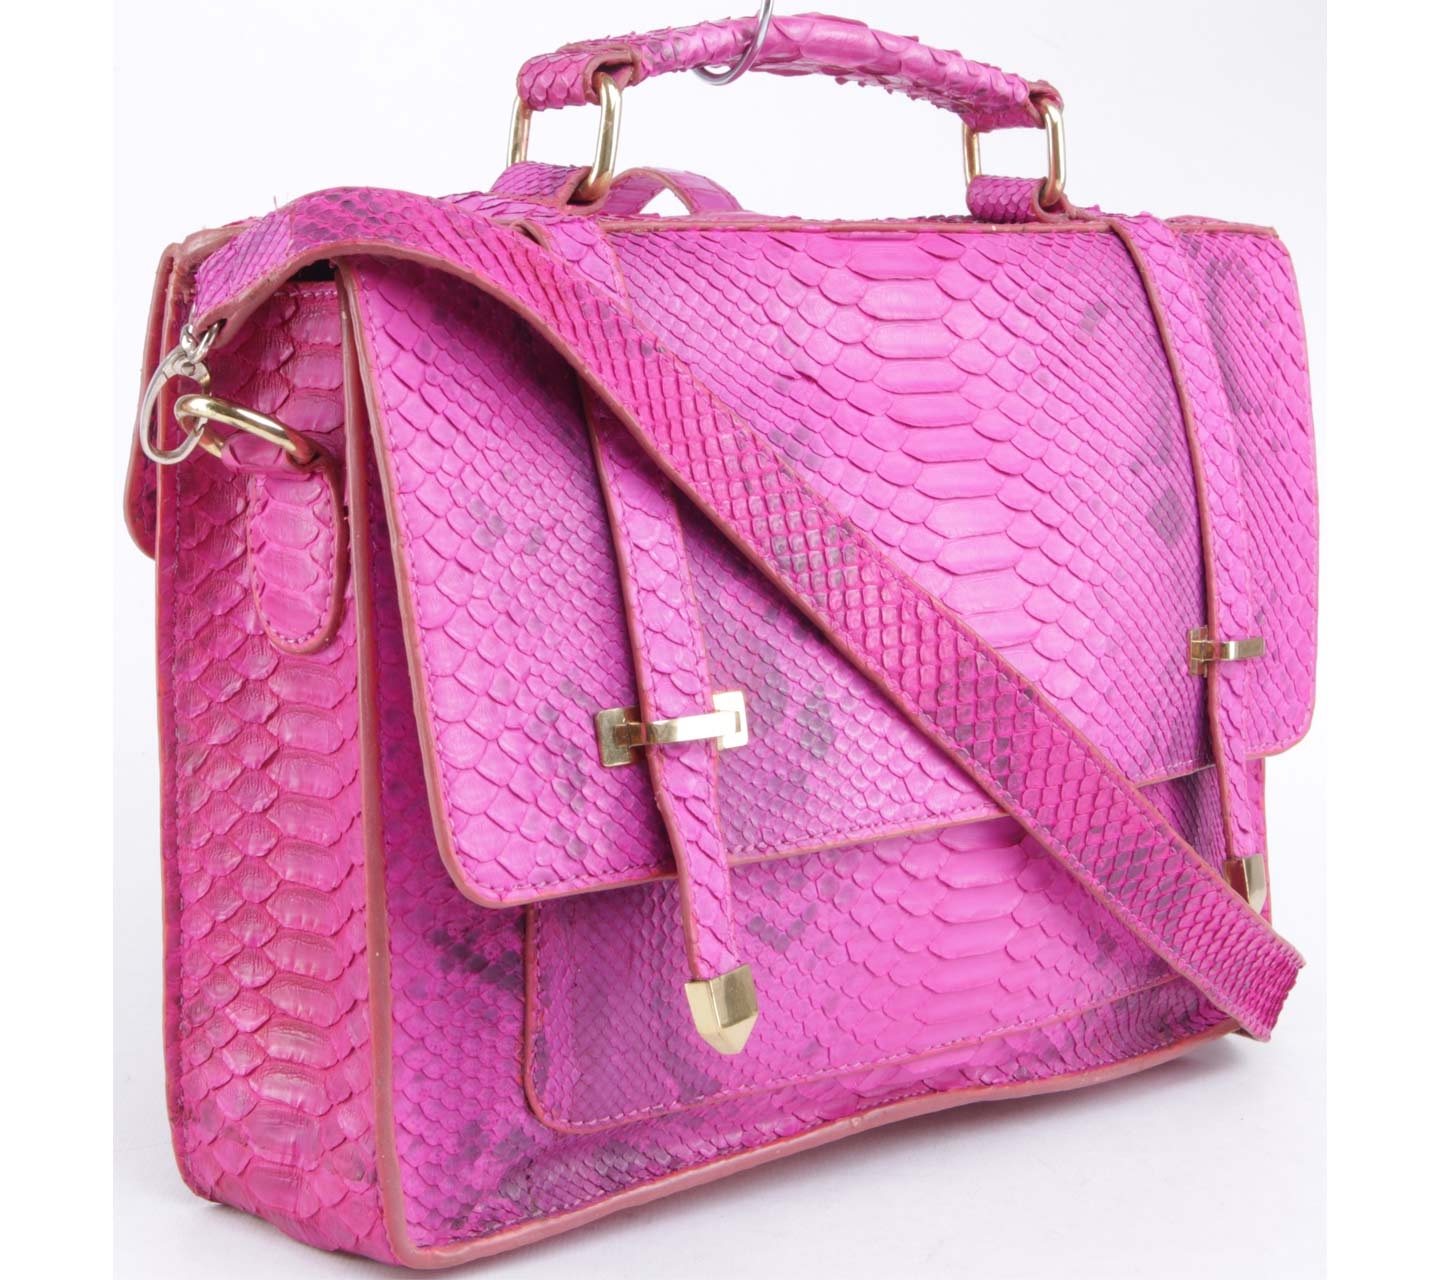 Marnova Pink Satchel Bag